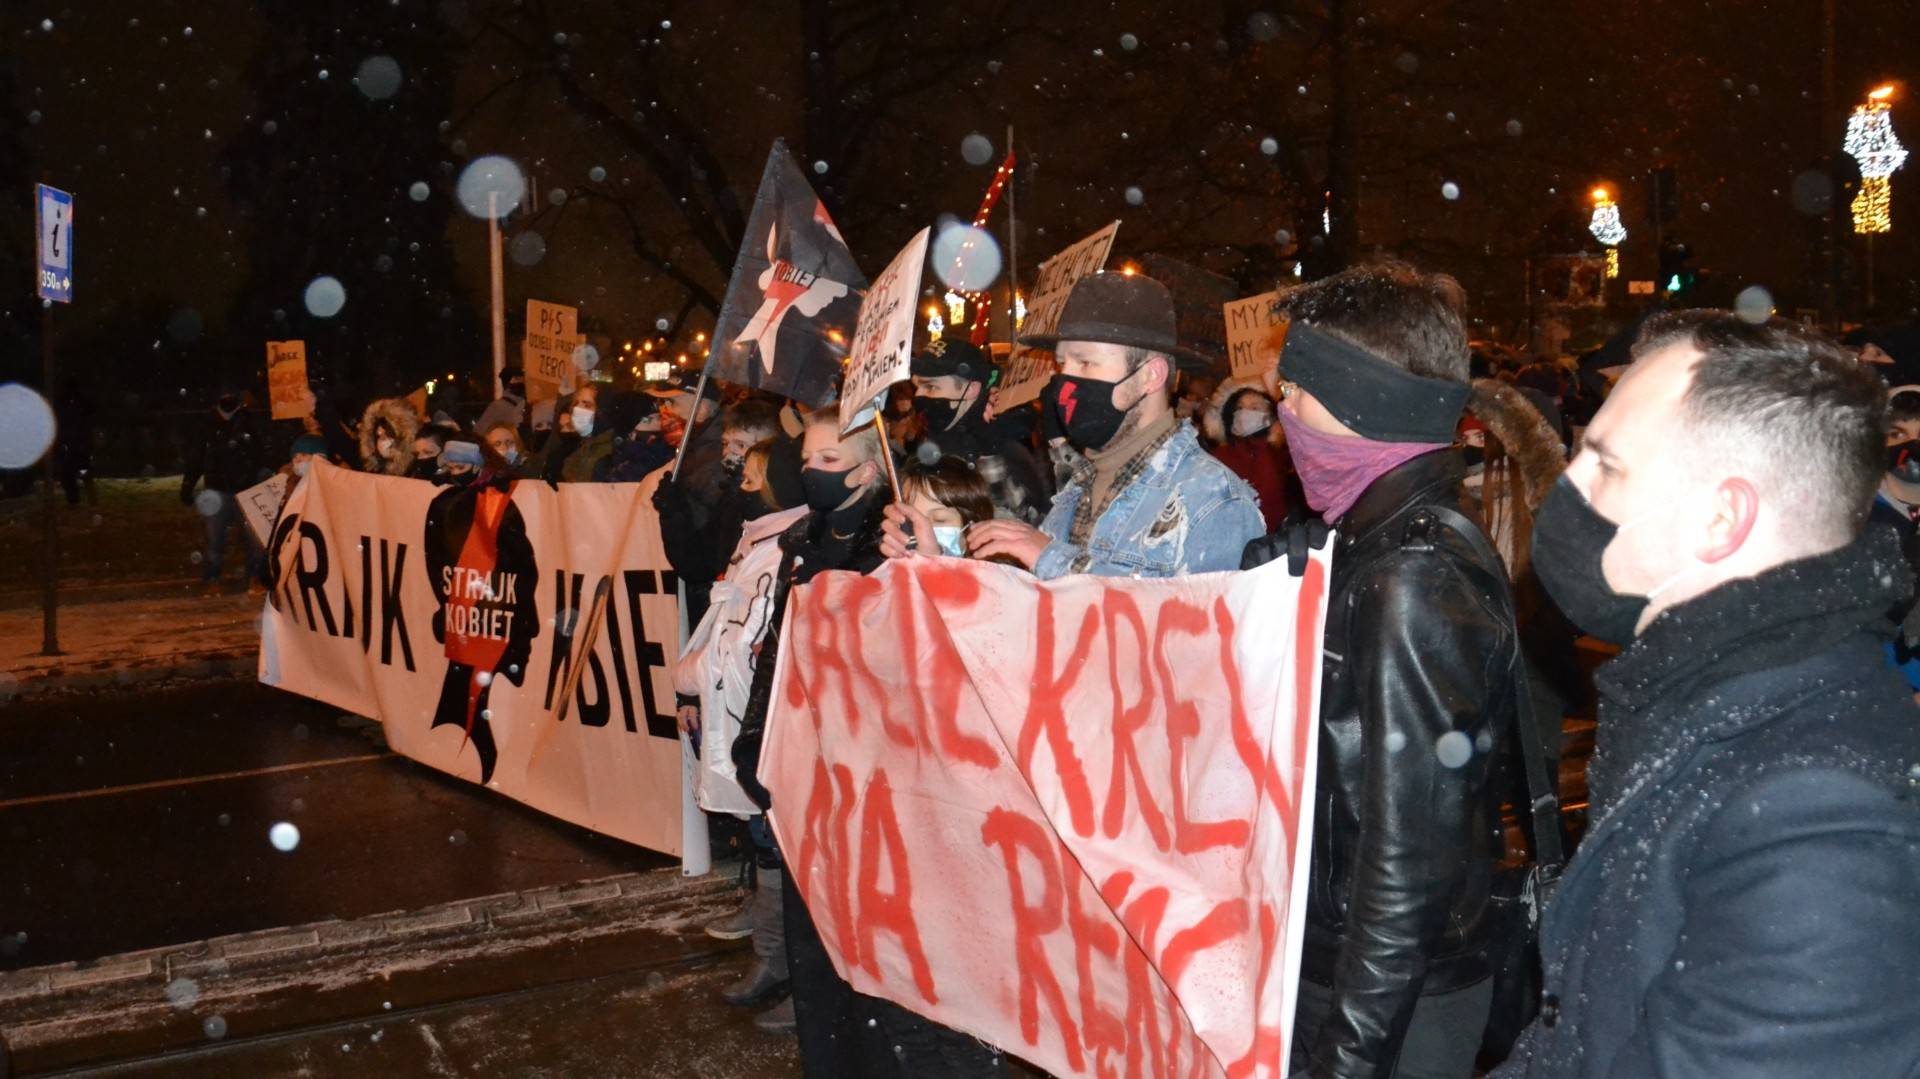 Hasła ostre, ale protest spokojny. Tysiące osób przeszły przez Kraków